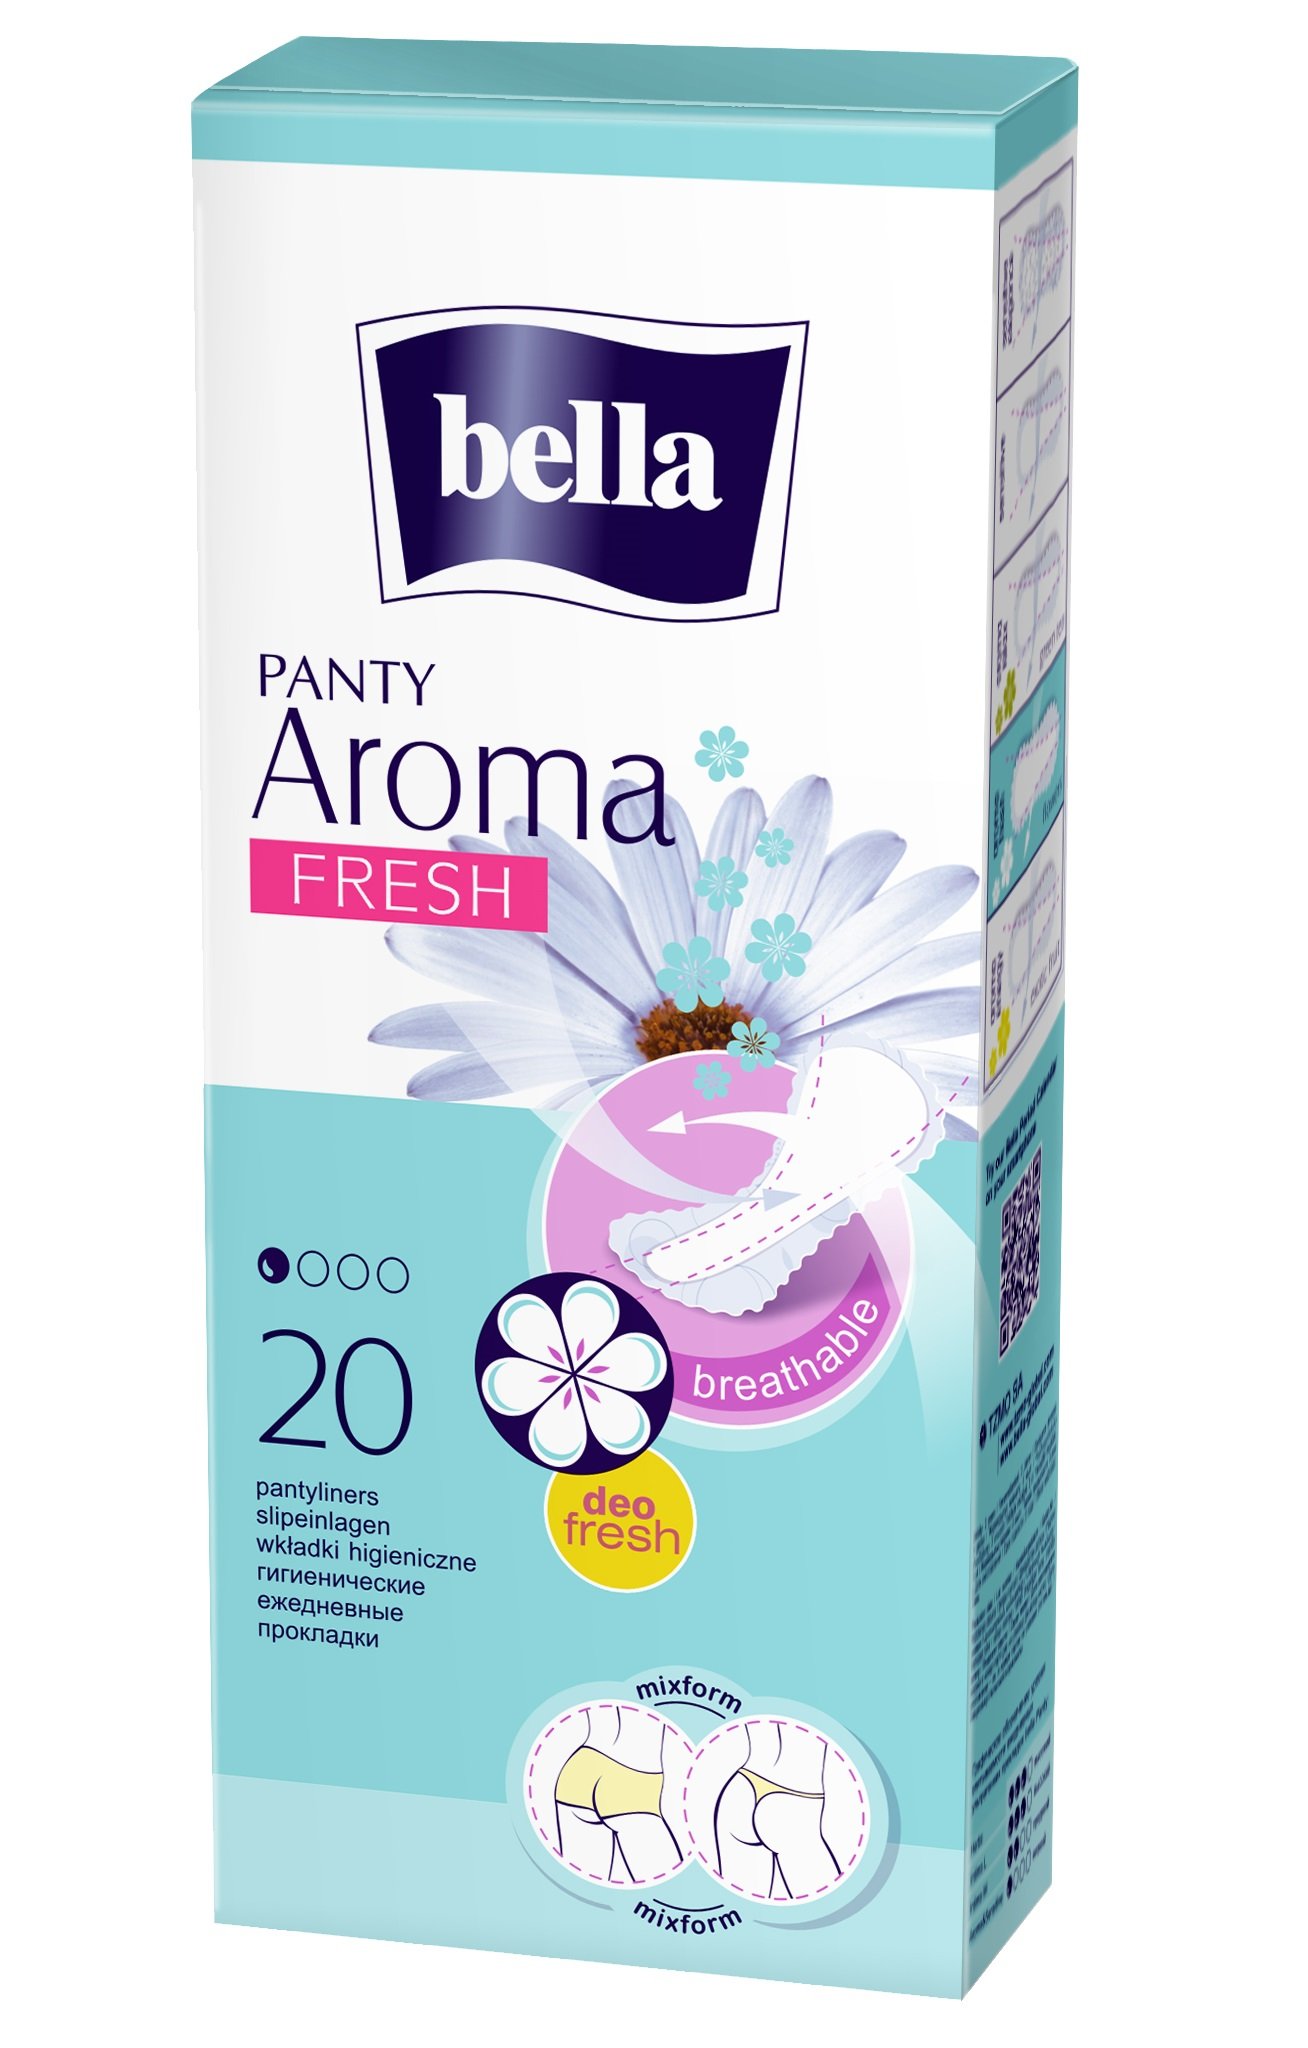 Ежедневные прокладки Bella Panty Aroma Fresh 20 шт. - фото 2